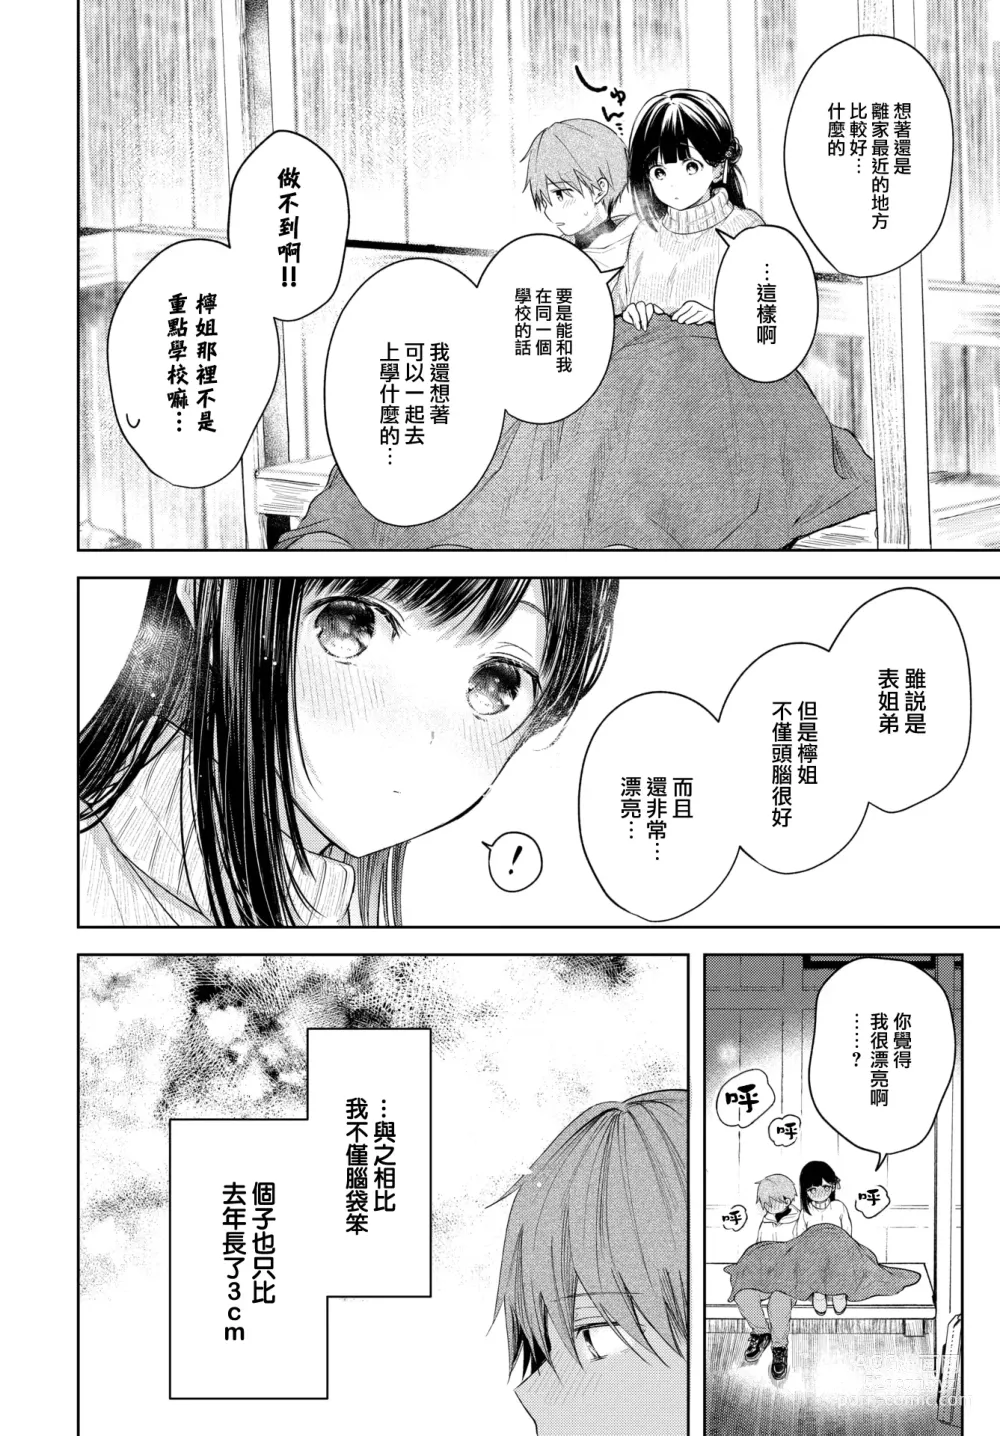 Page 9 of manga Ii mo Amai mo Kimi to Dake.